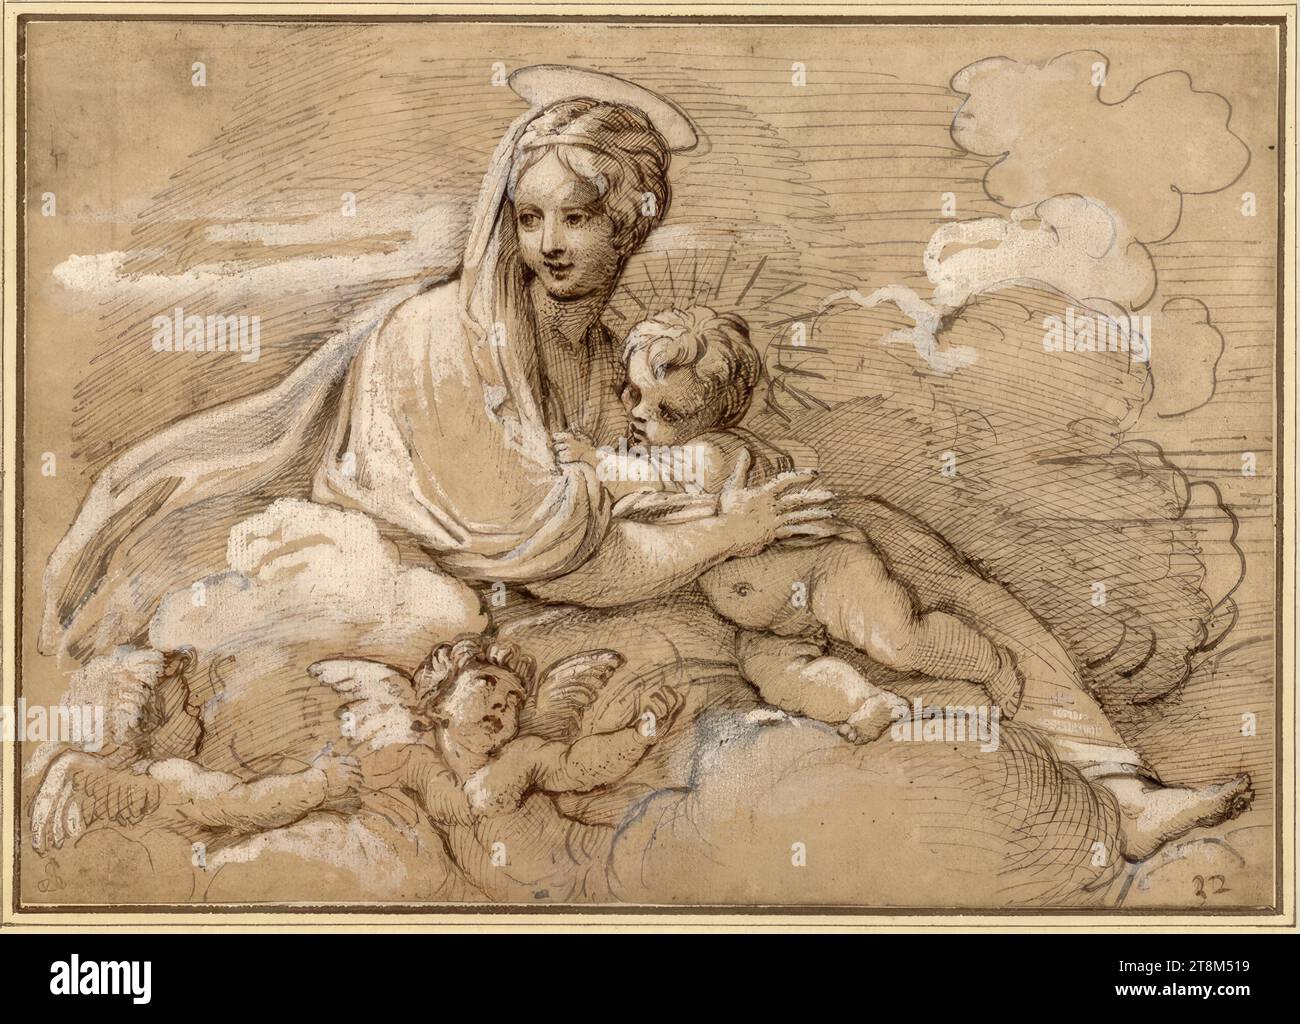 La Nursing Mary with the Child, anonyme, dessin, sanguine ; plume; blanc rehaussé, 16,4 x 22,8 cm, l. l. Duc Albert de Saxe-Teschen, peut-être lu comme '32' dans la plume du dessin en bas à droite Banque D'Images